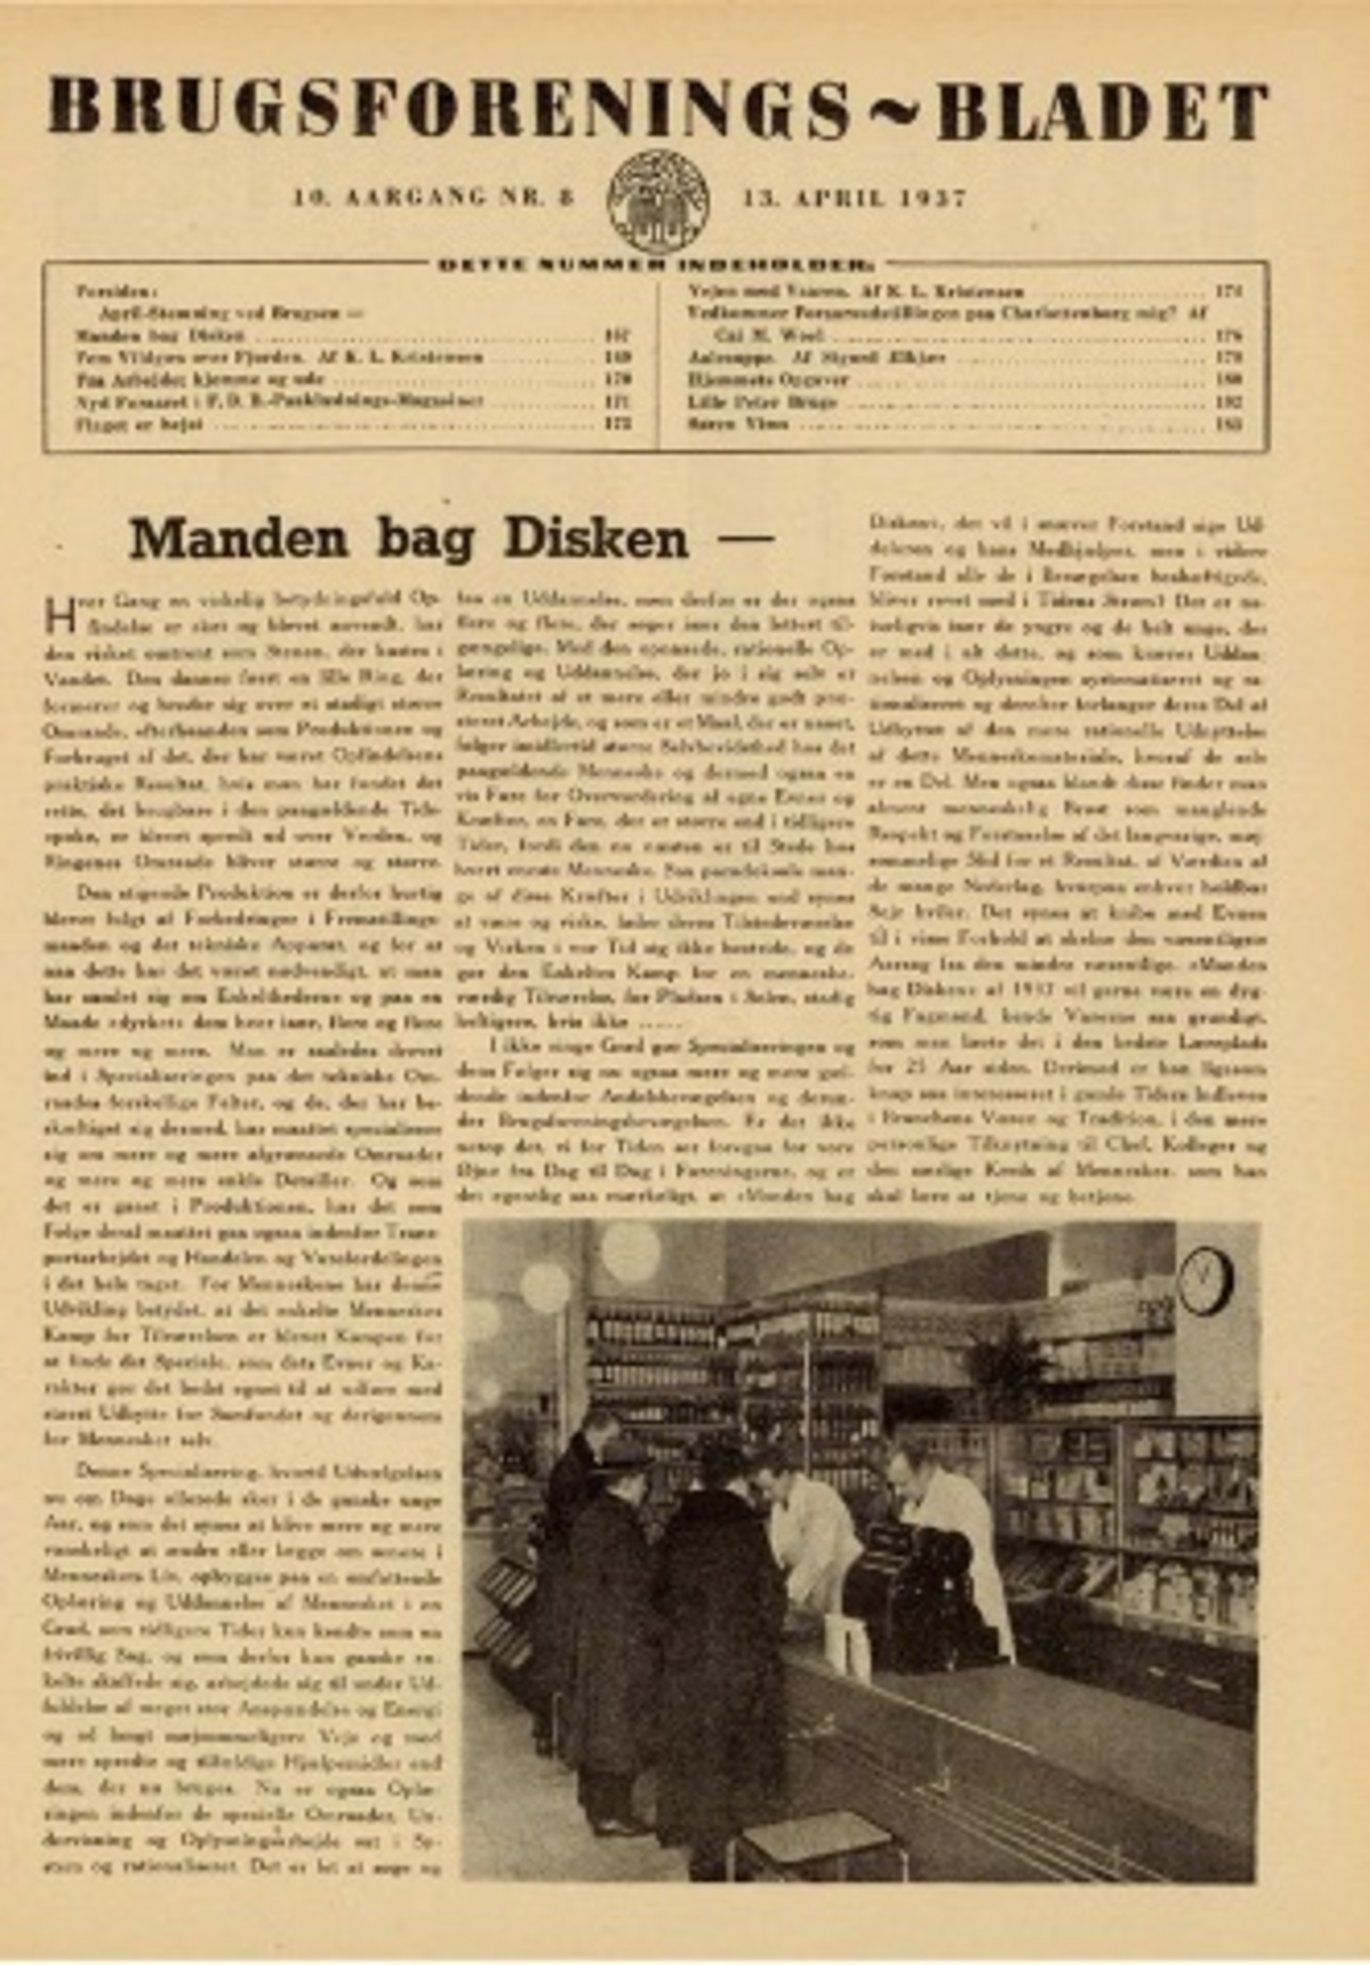 Viser forsiden fra Brugsforenings-bladet fra 1937